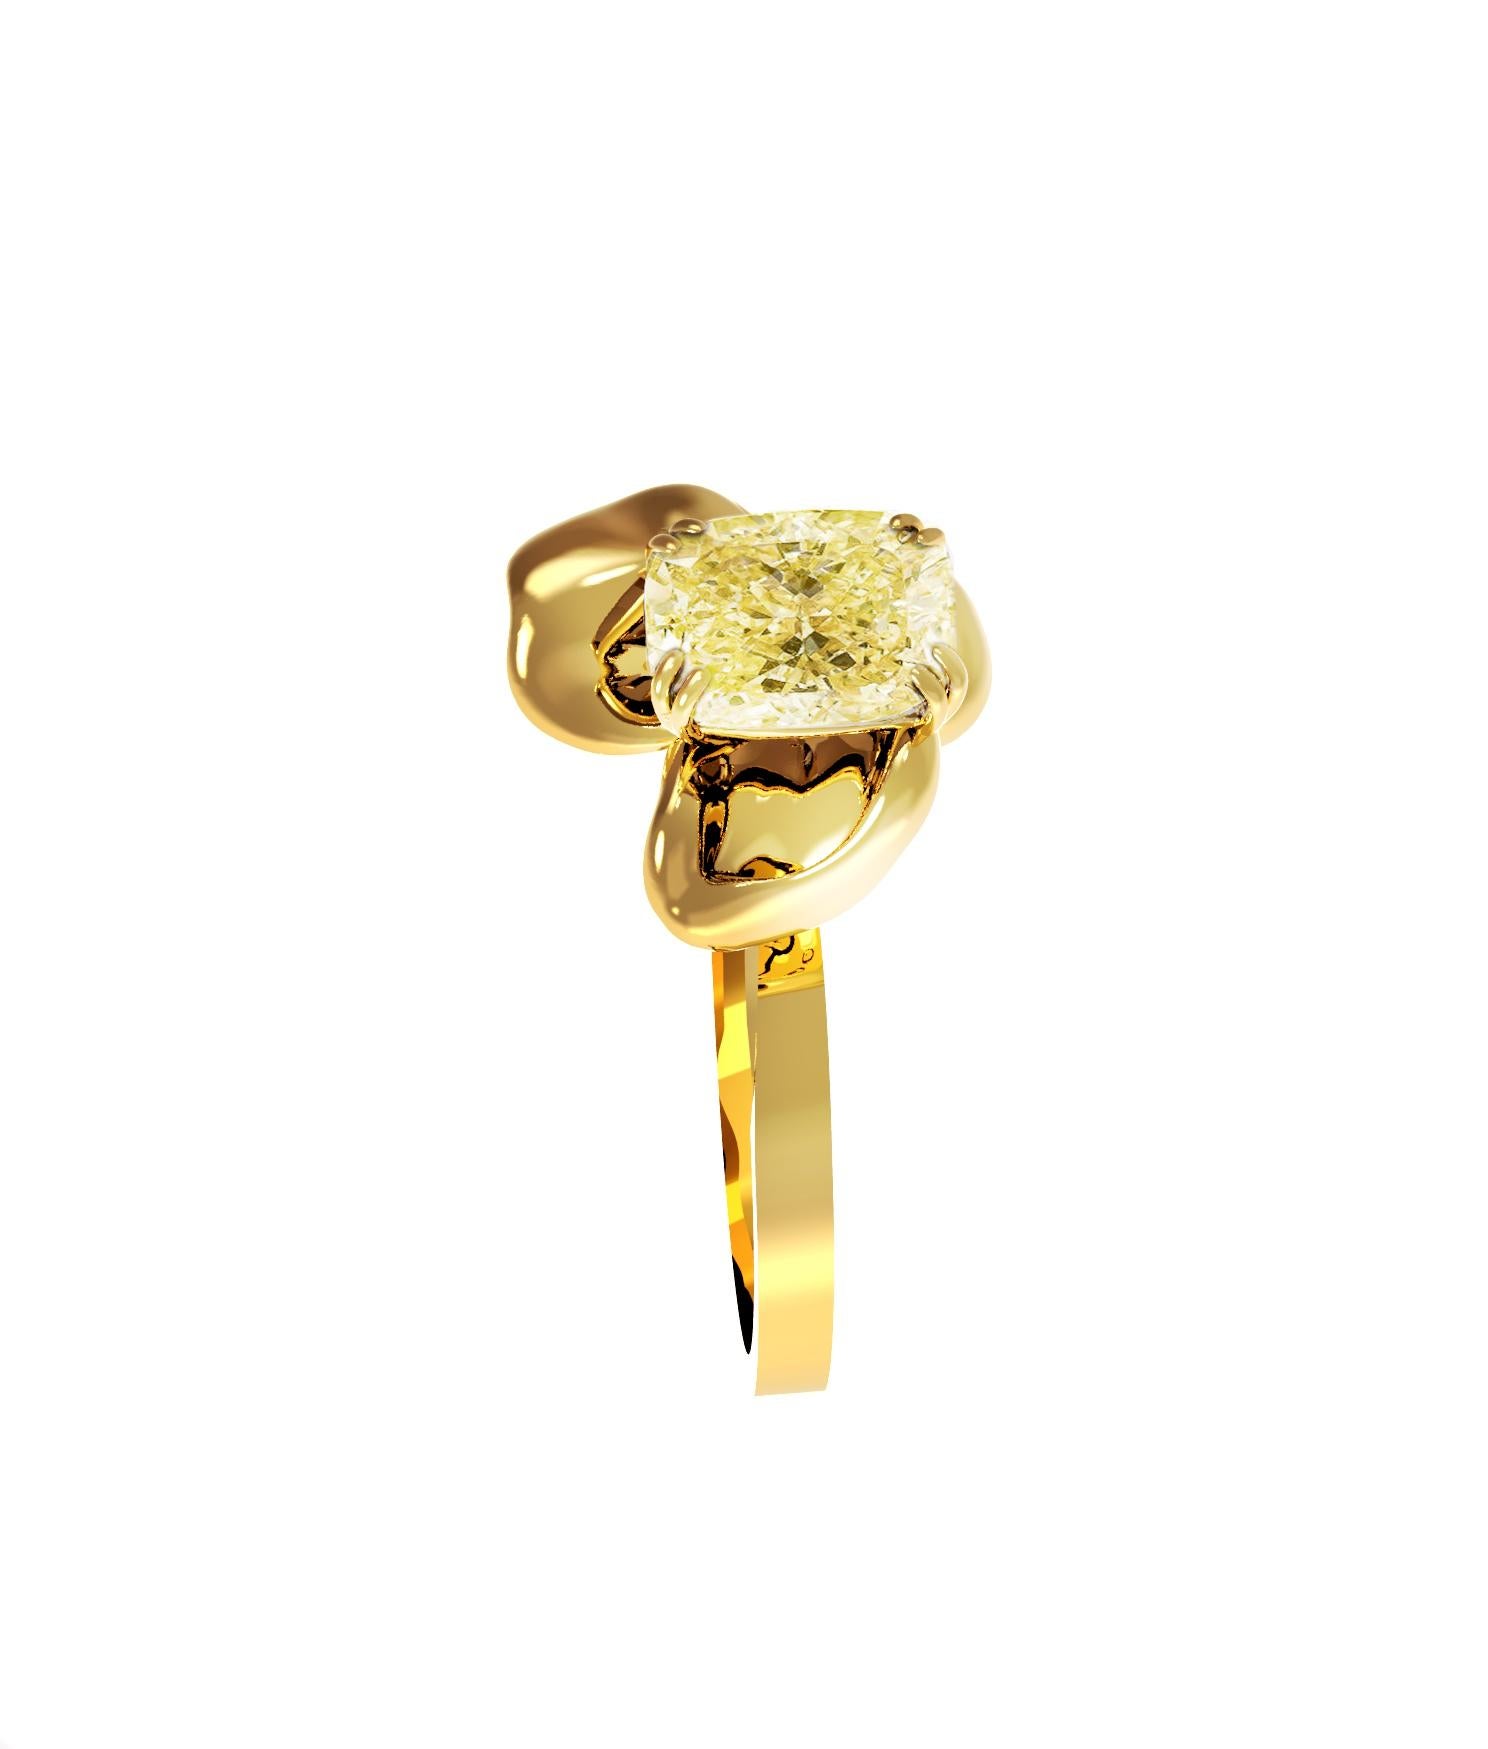 Dieser atemberaubende Buttercup-Ring ist aus 18 Karat Gelbgold gefertigt und mit einem GIA-zertifizierten, natürlichen gelben Kissen-Diamanten (Y-Z) besetzt. Der Kissenschliff eignet sich besonders gut für gelbe Diamanten, da er ihre Schönheit